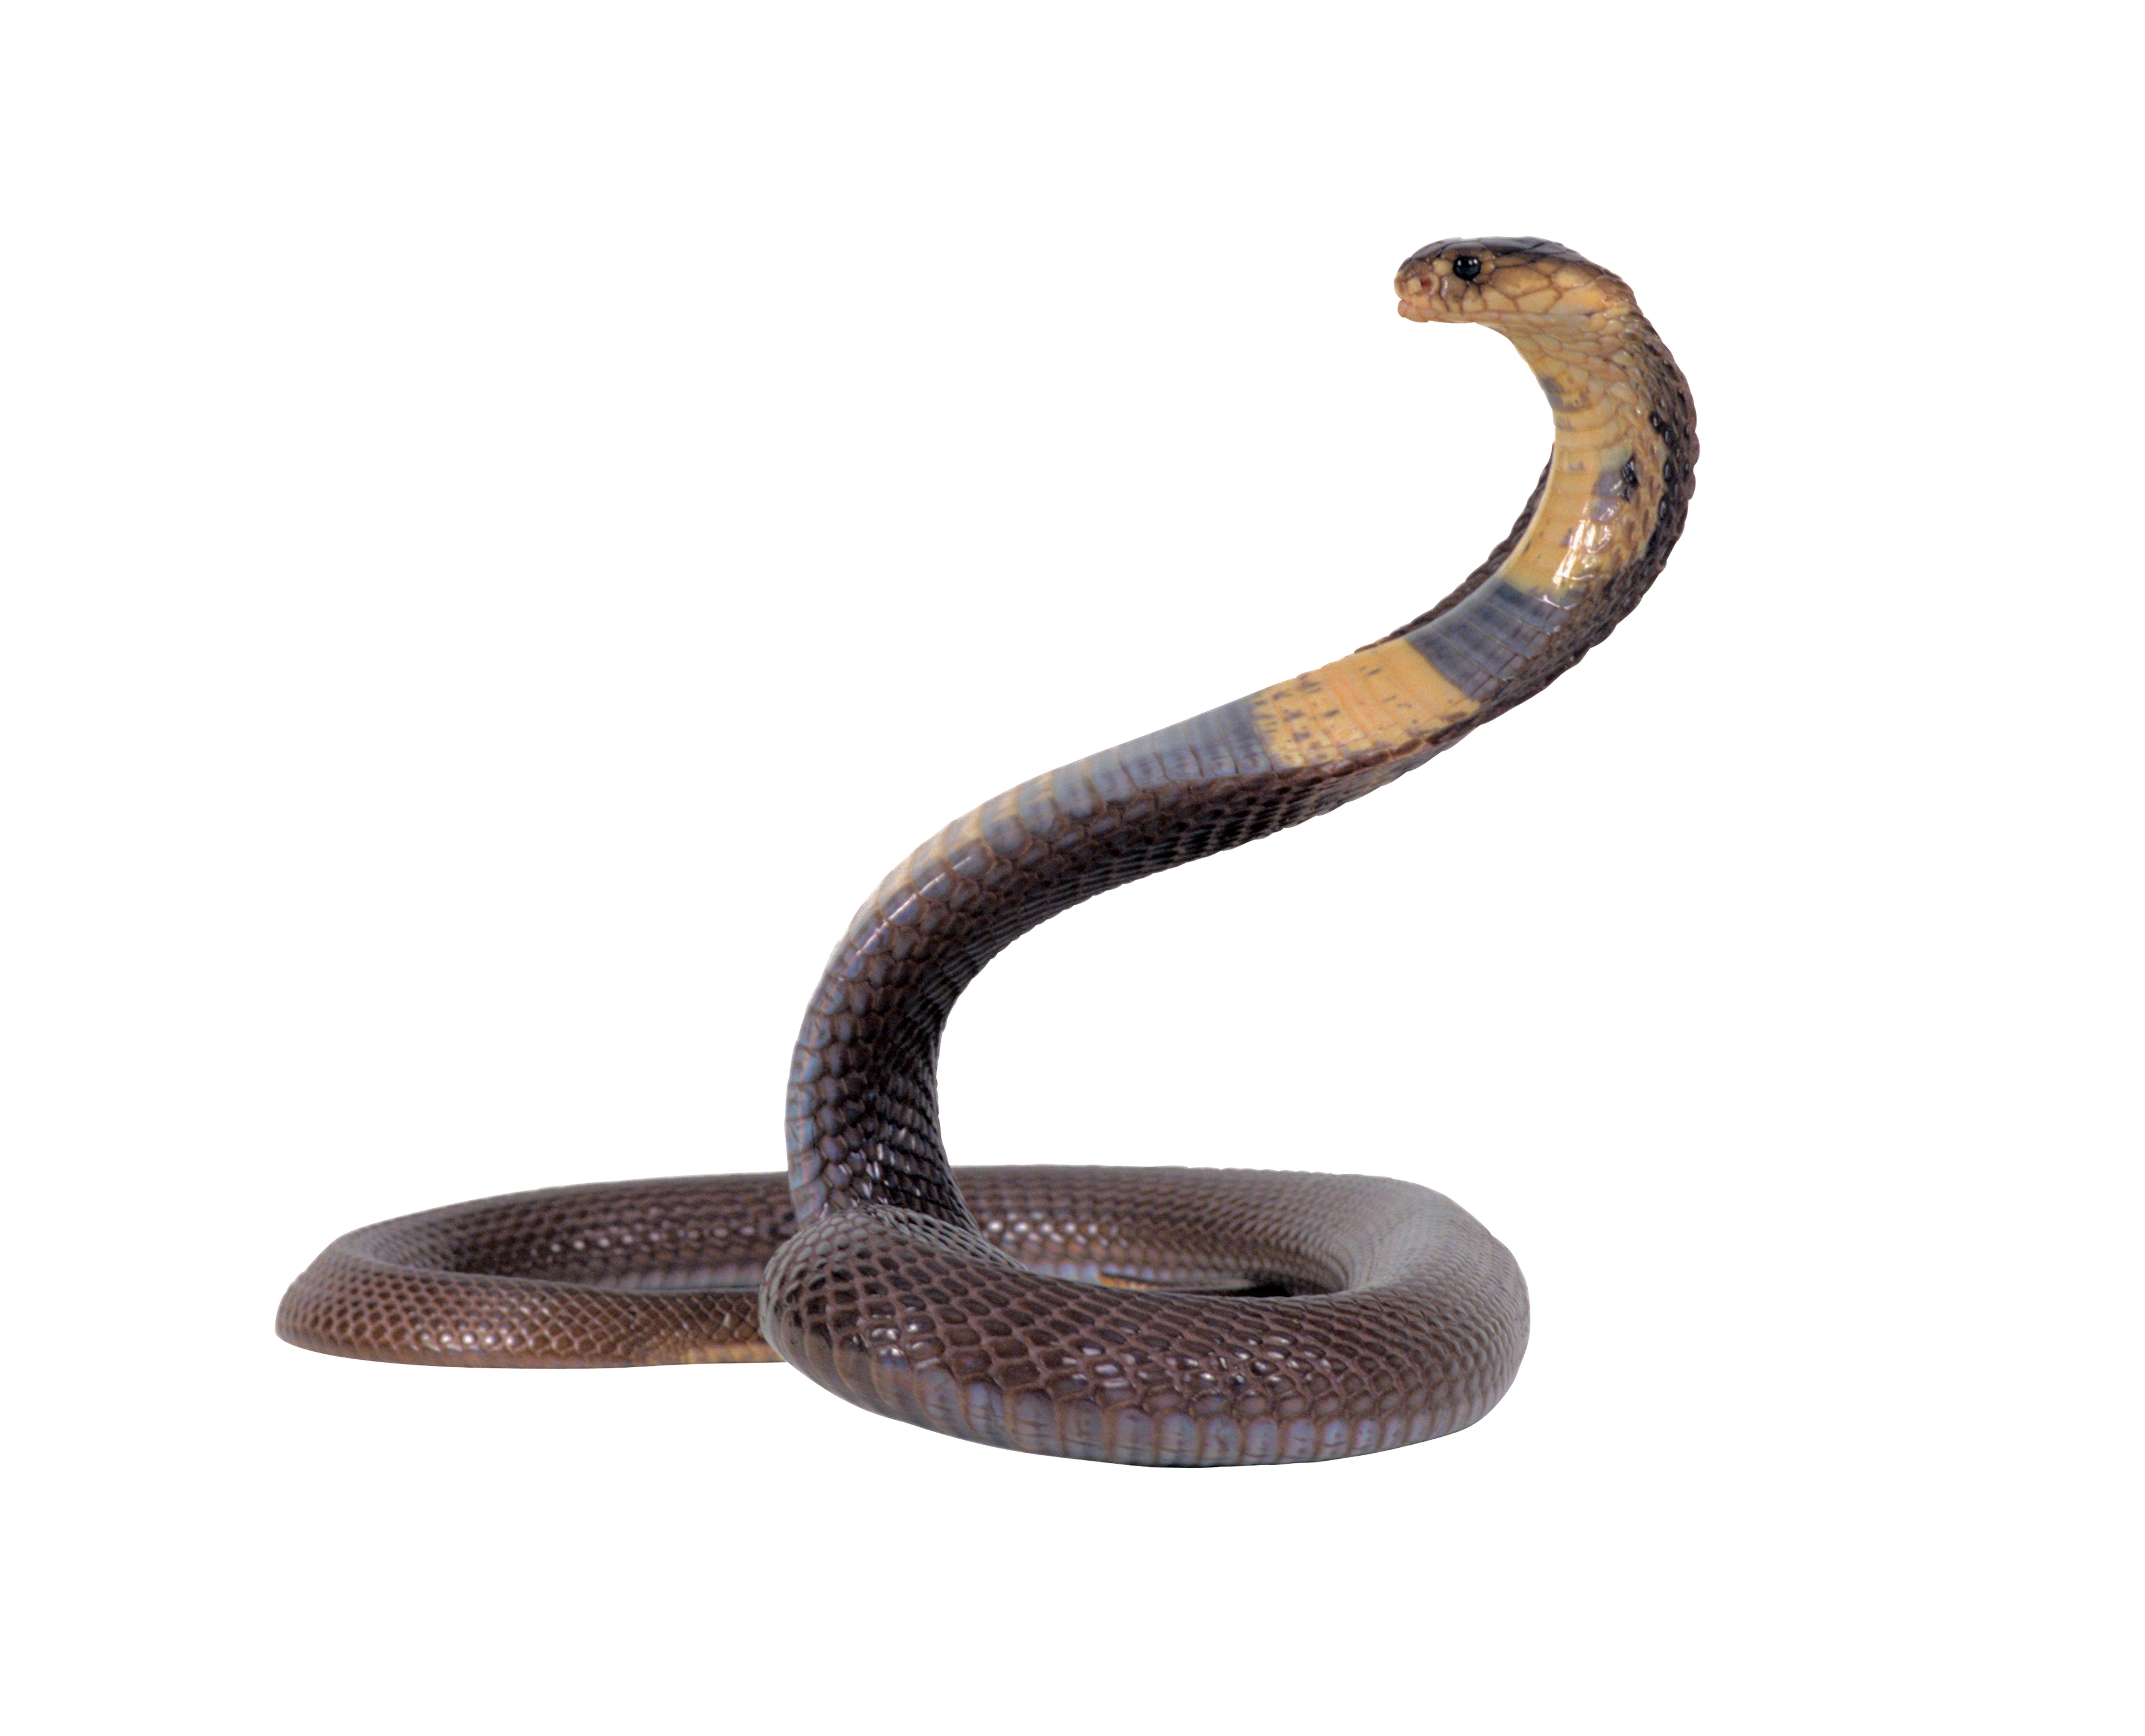 Cobra Snake PNG Photos